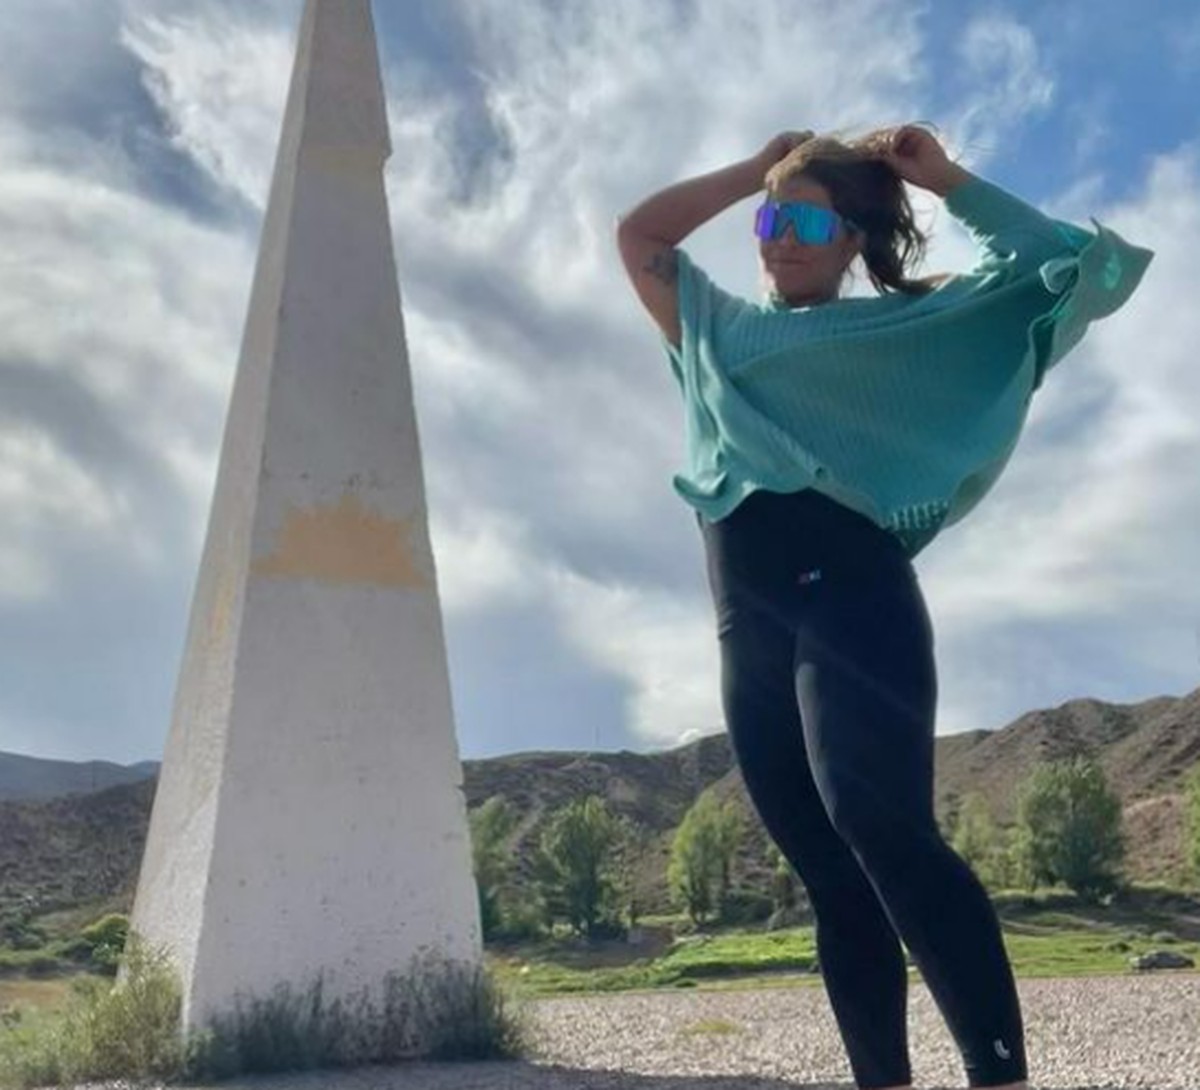 Priscila Fantin habla del miedo a hacer senderismo sola en Argentina: “Hay peligro hasta en casa” |  Entretenimiento